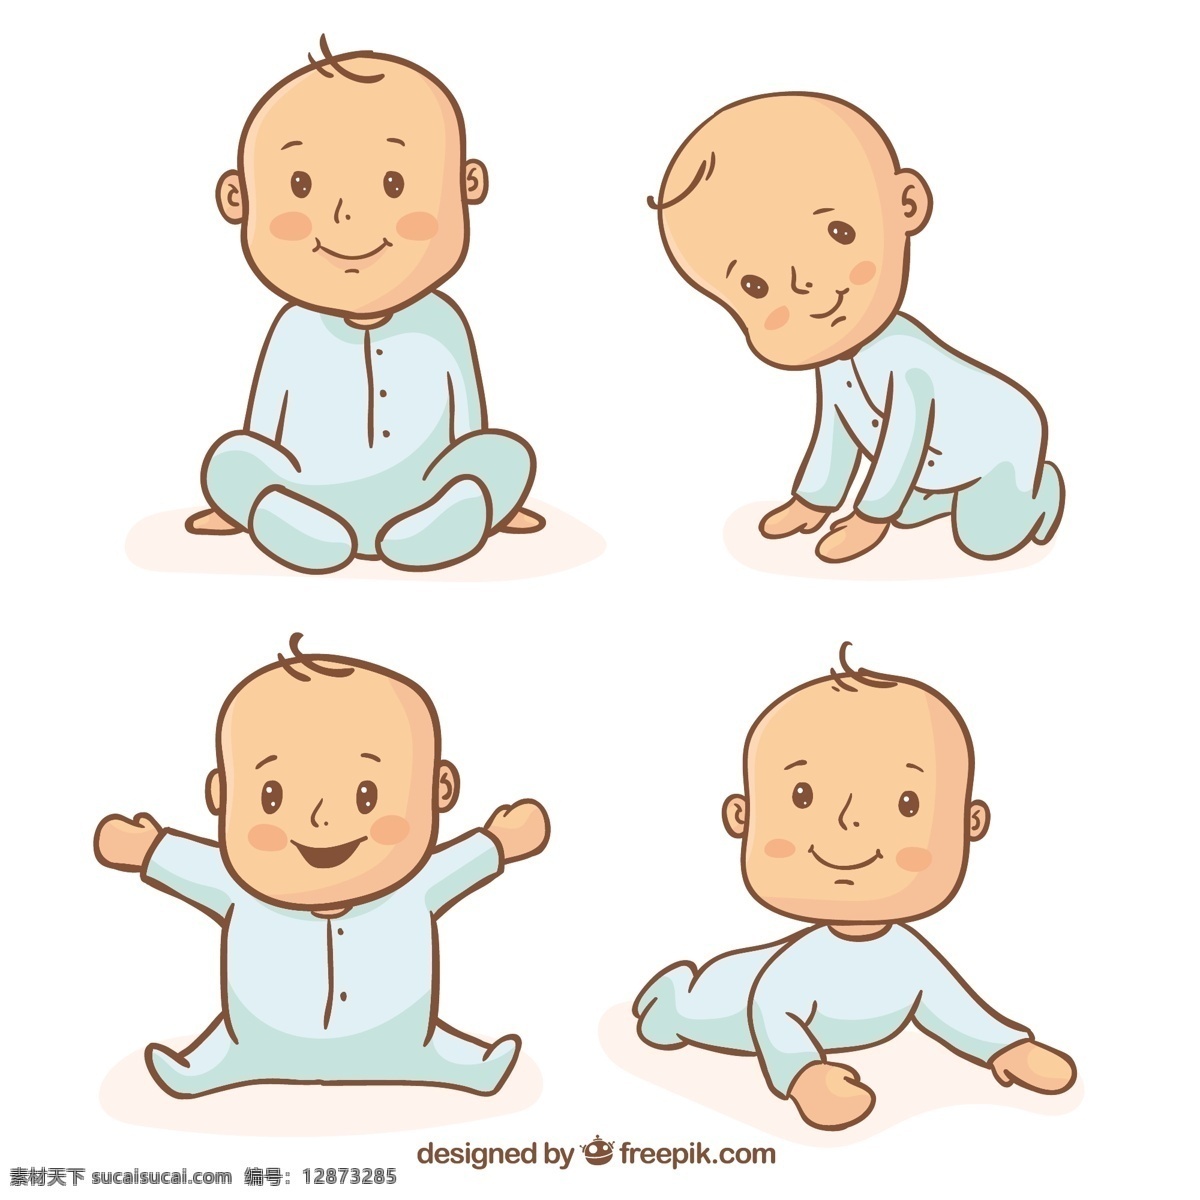 蓝色 睡衣 手工 收集 婴儿 宝贝 一方面 蓝色性格 婴儿淋浴 手绘的 可爱的 孩子 人 字 淋浴 手绘 绘制出生 婴儿出生 可爱